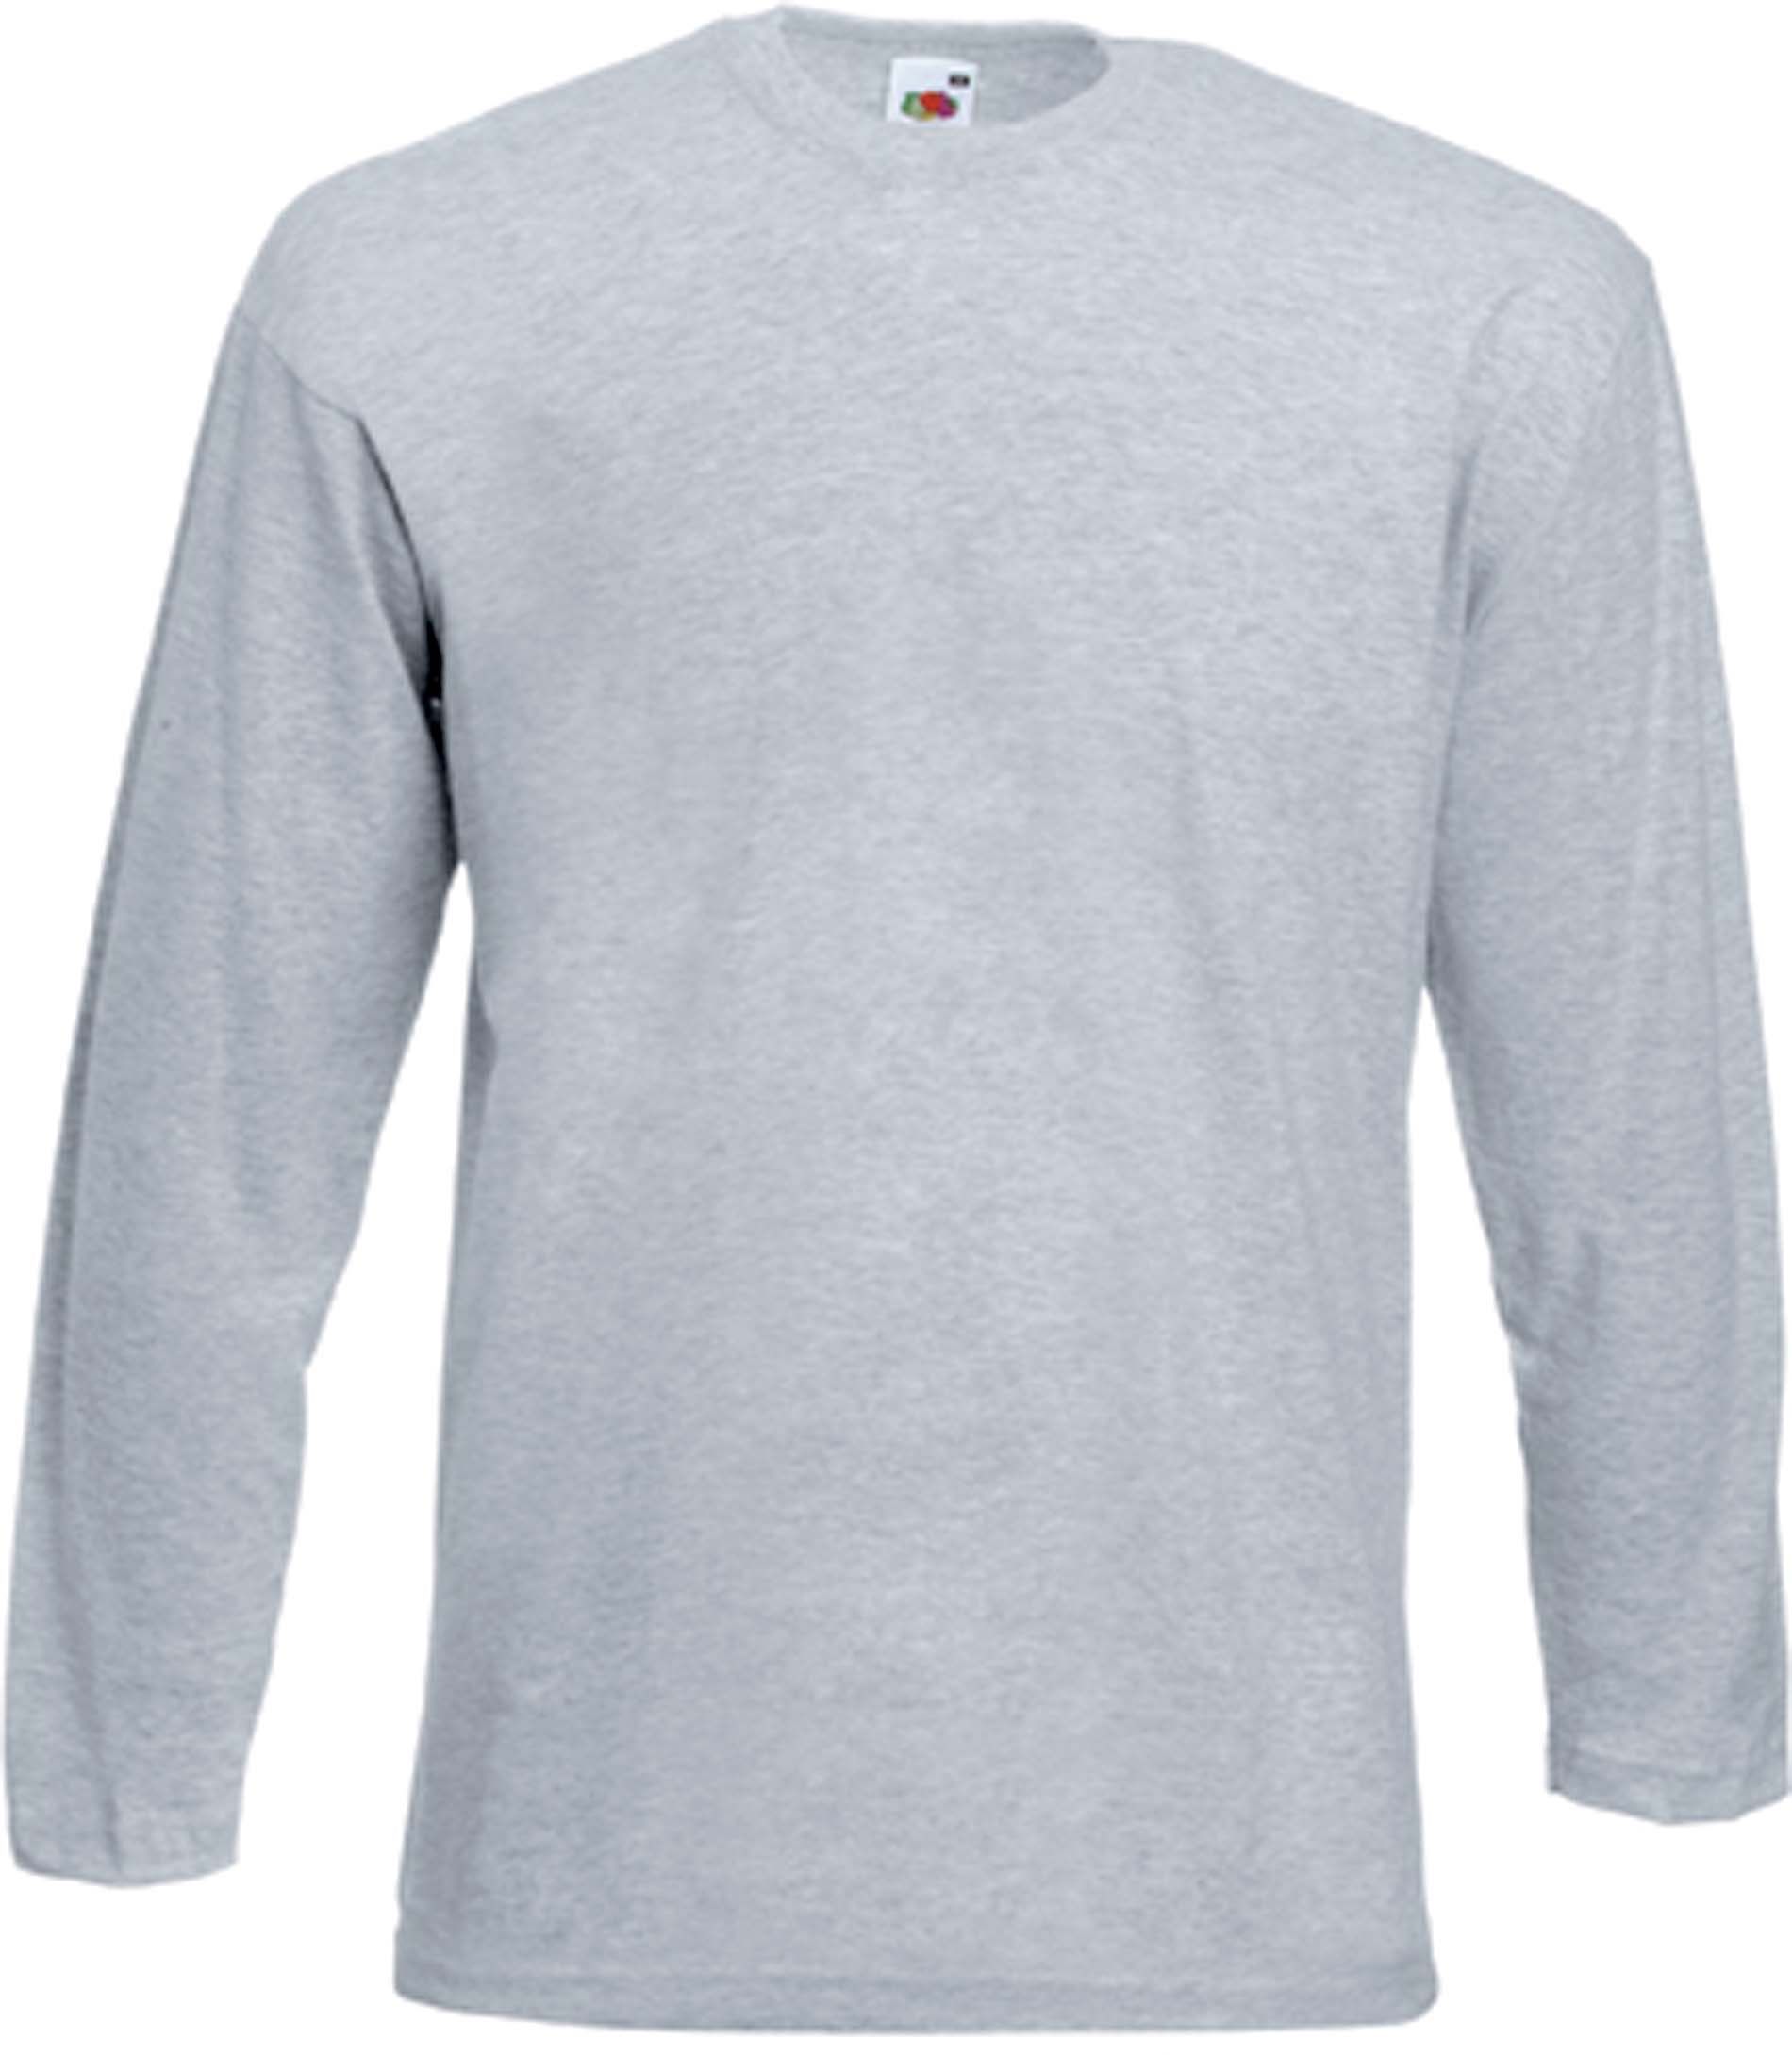 T-shirt homme manches longues Valueweight SC201 - Heather Grey en vente chez Textile Direct